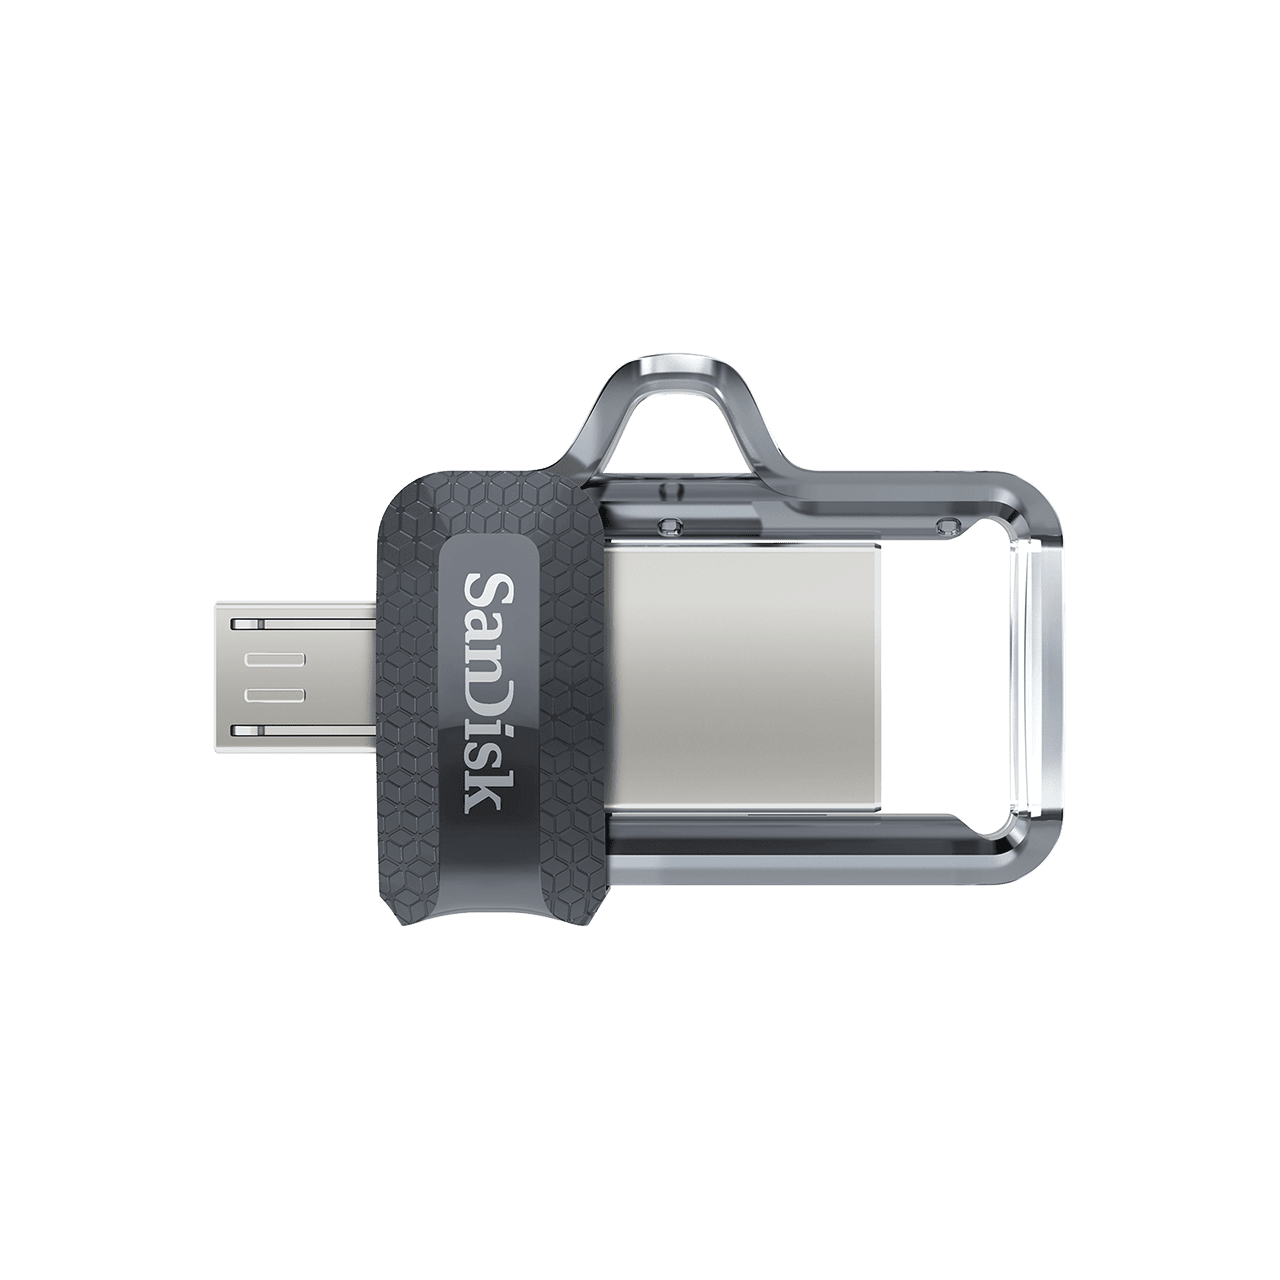 Bild von Ultra Dual Drive m.3 256 GB USB 3.0